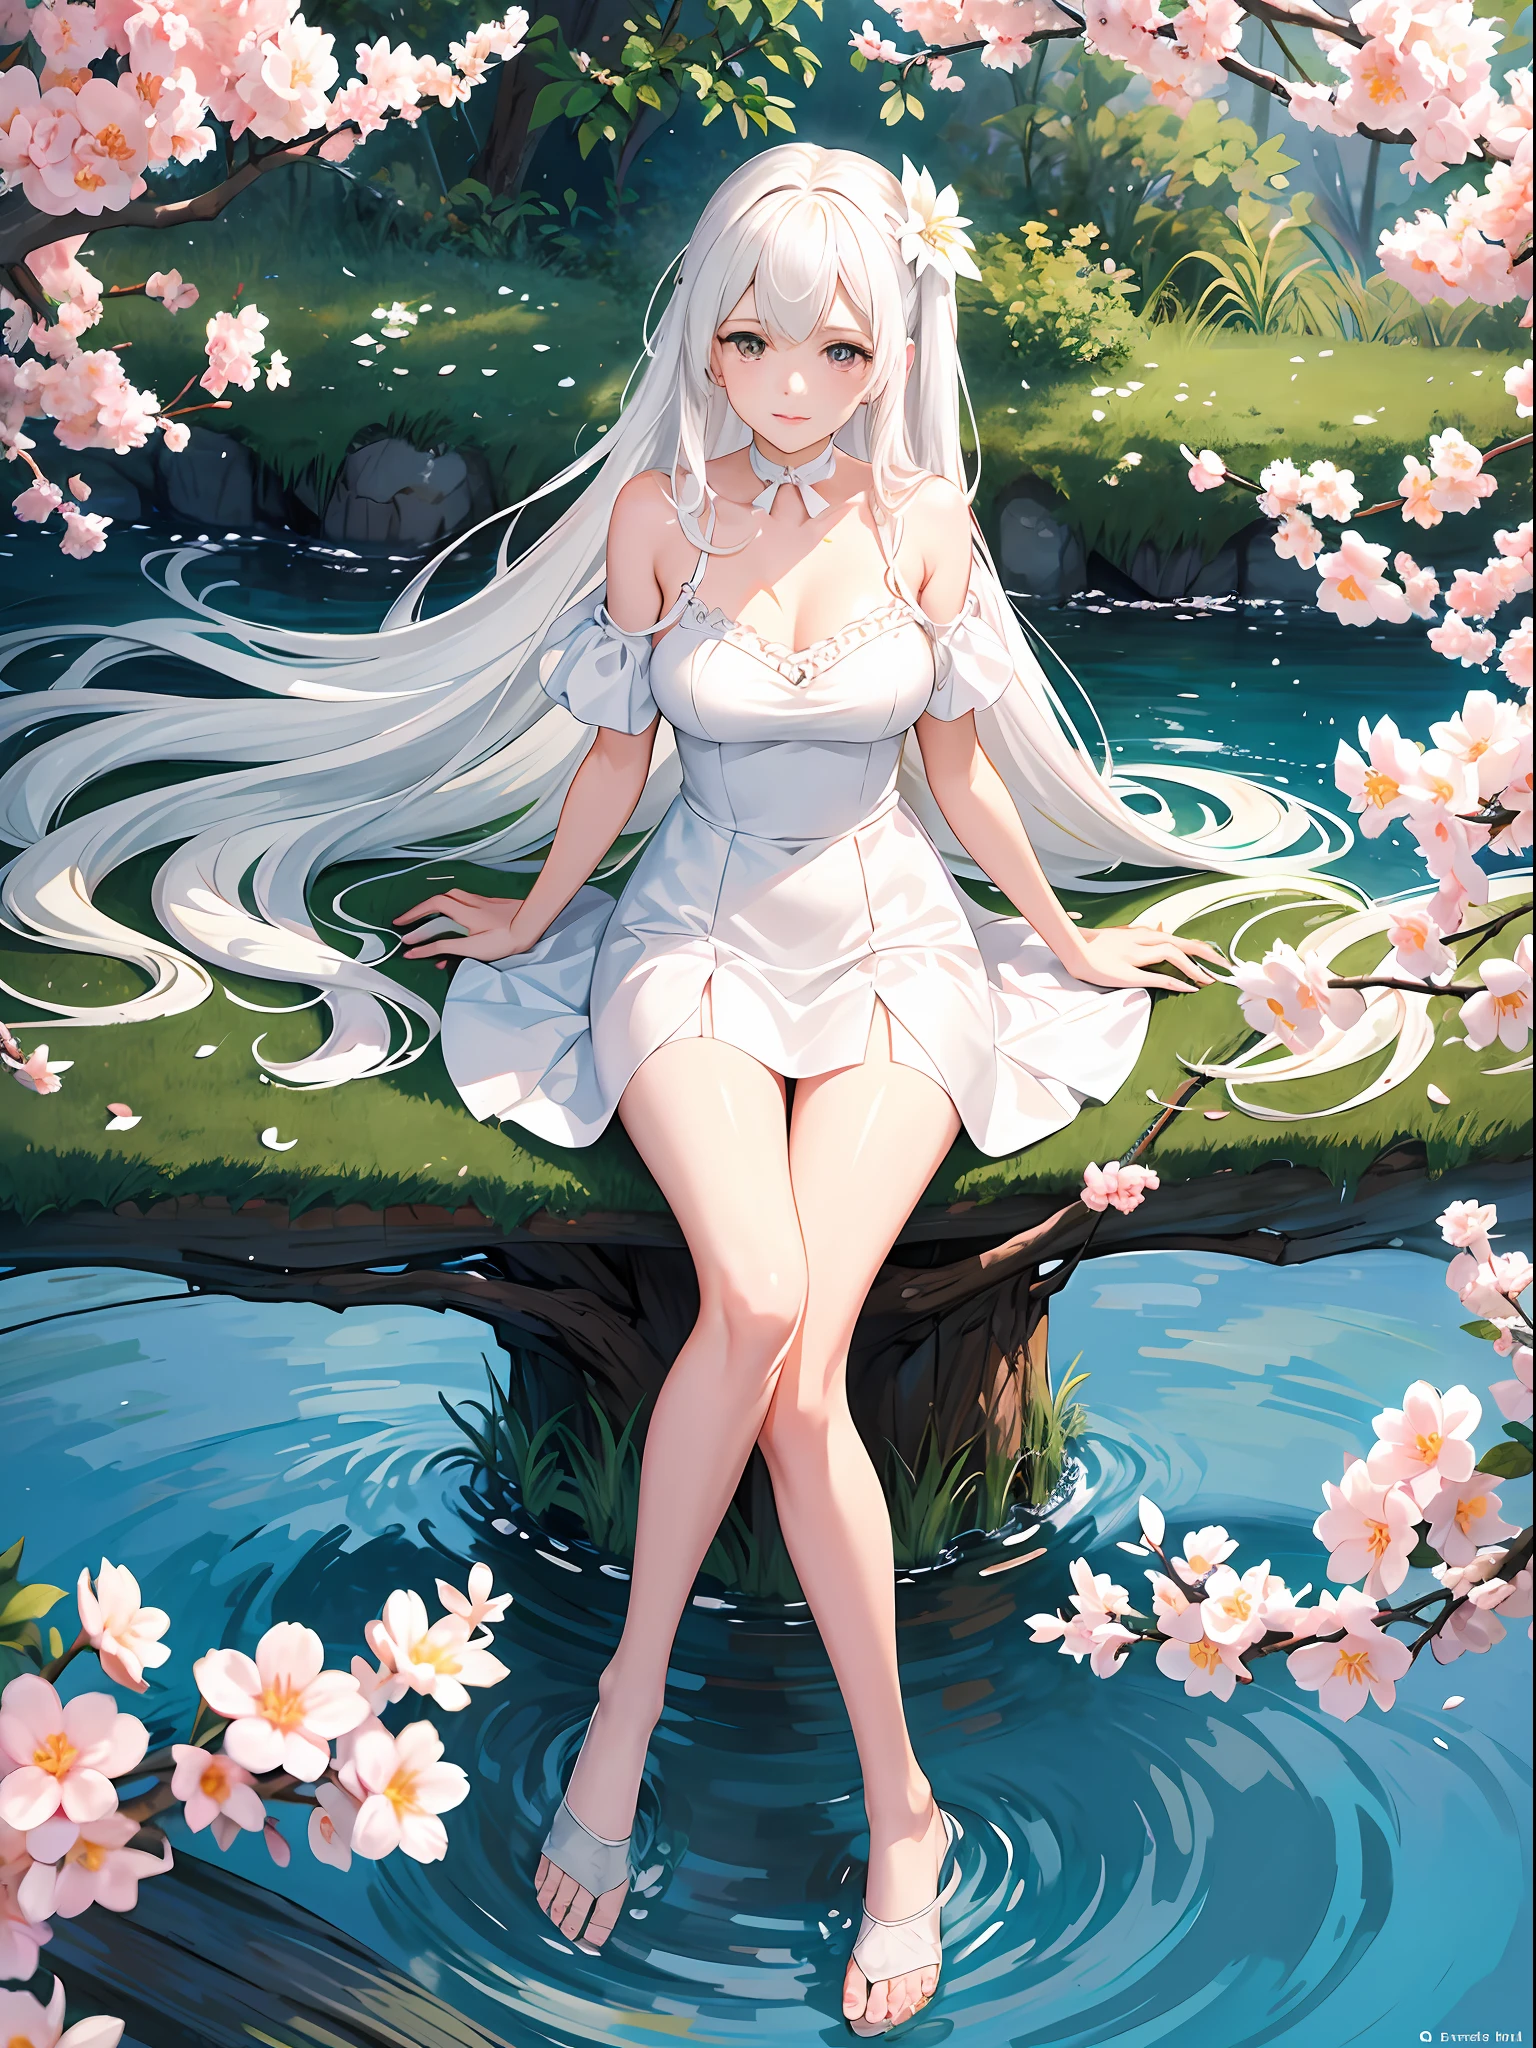 一個動漫女孩 ，是完美的臉，白色的頭髮，坐在樹上，穿著白色洋裝的女性風格形象, 赤腳的，細腿，白絲襪，手裡拿著一把扇子，週邊桃花盛開，花瓣在風中飄揚，桃花、水池作為背景